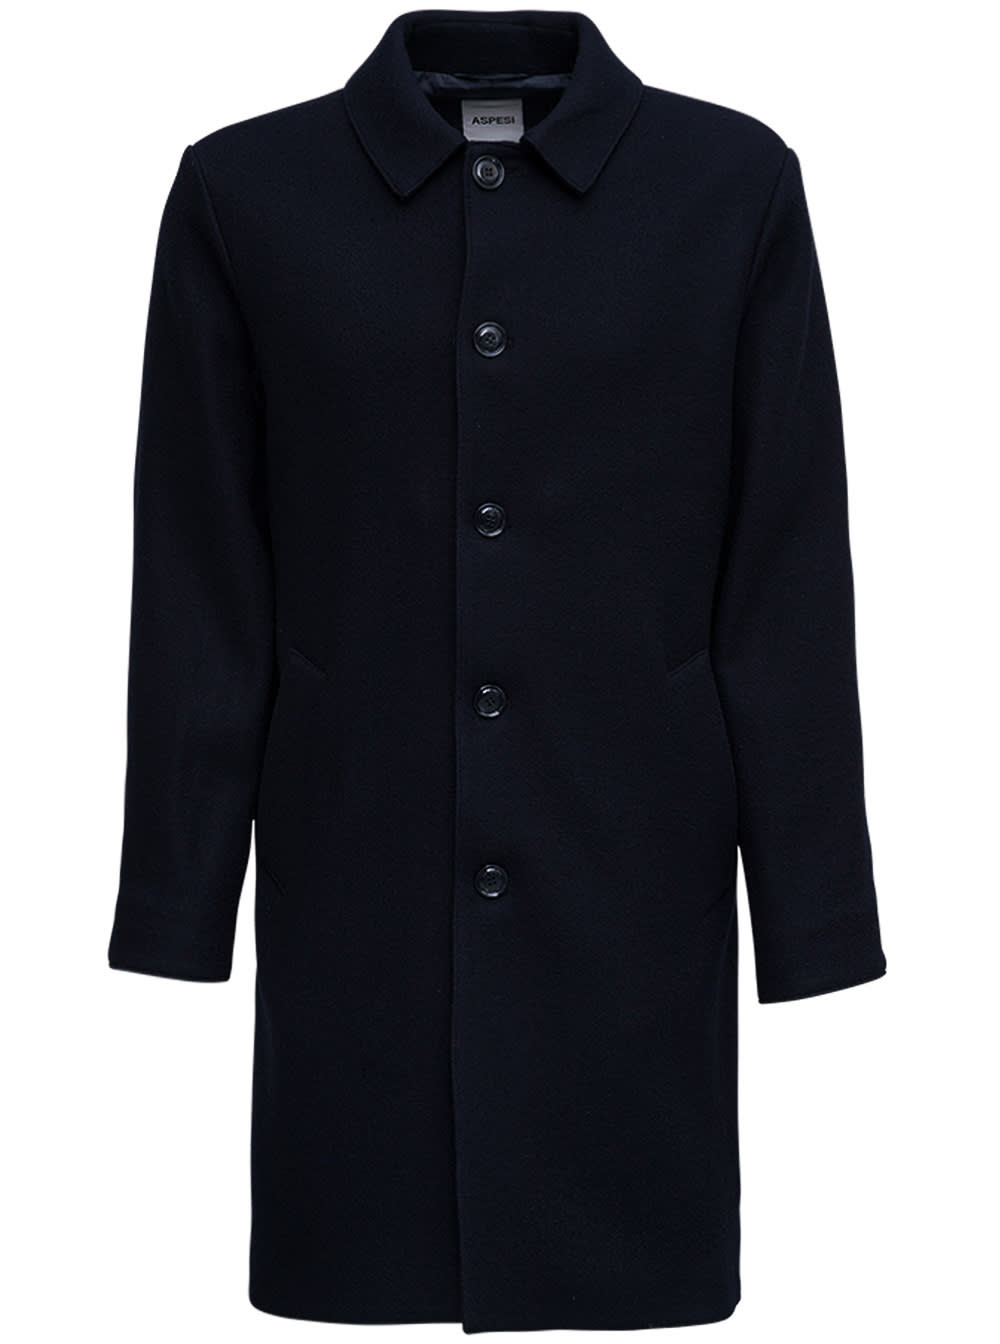 Aspesi Single-breasted Blue Wool Coat